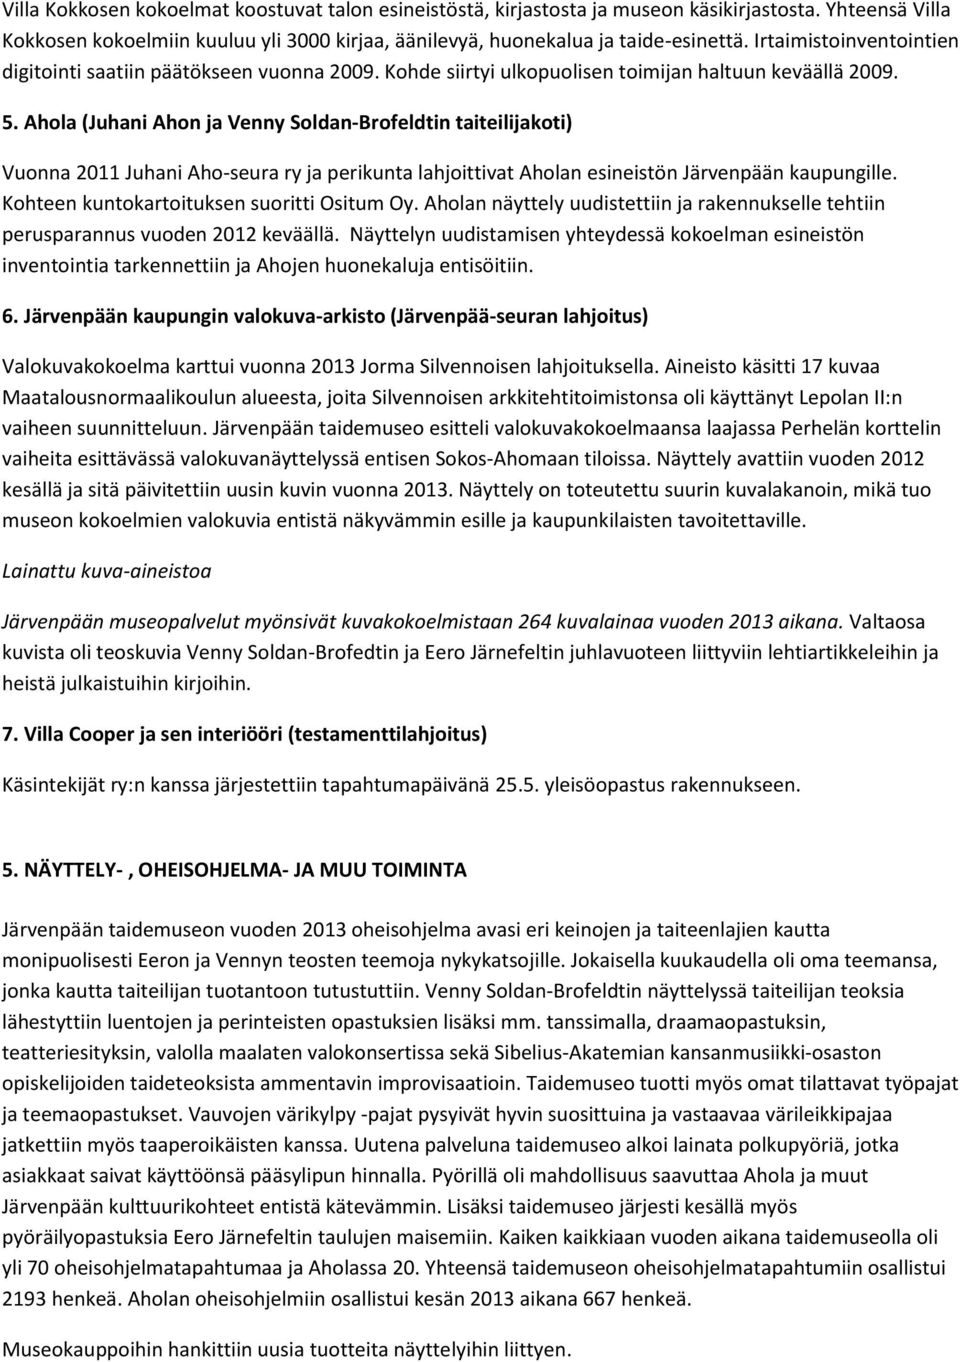 Ahola (Juhani Ahon ja Venny Soldan-Brofeldtin taiteilijakoti) Vuonna 2011 Juhani Aho-seura ry ja perikunta lahjoittivat Aholan esineistön Järvenpään kaupungille.